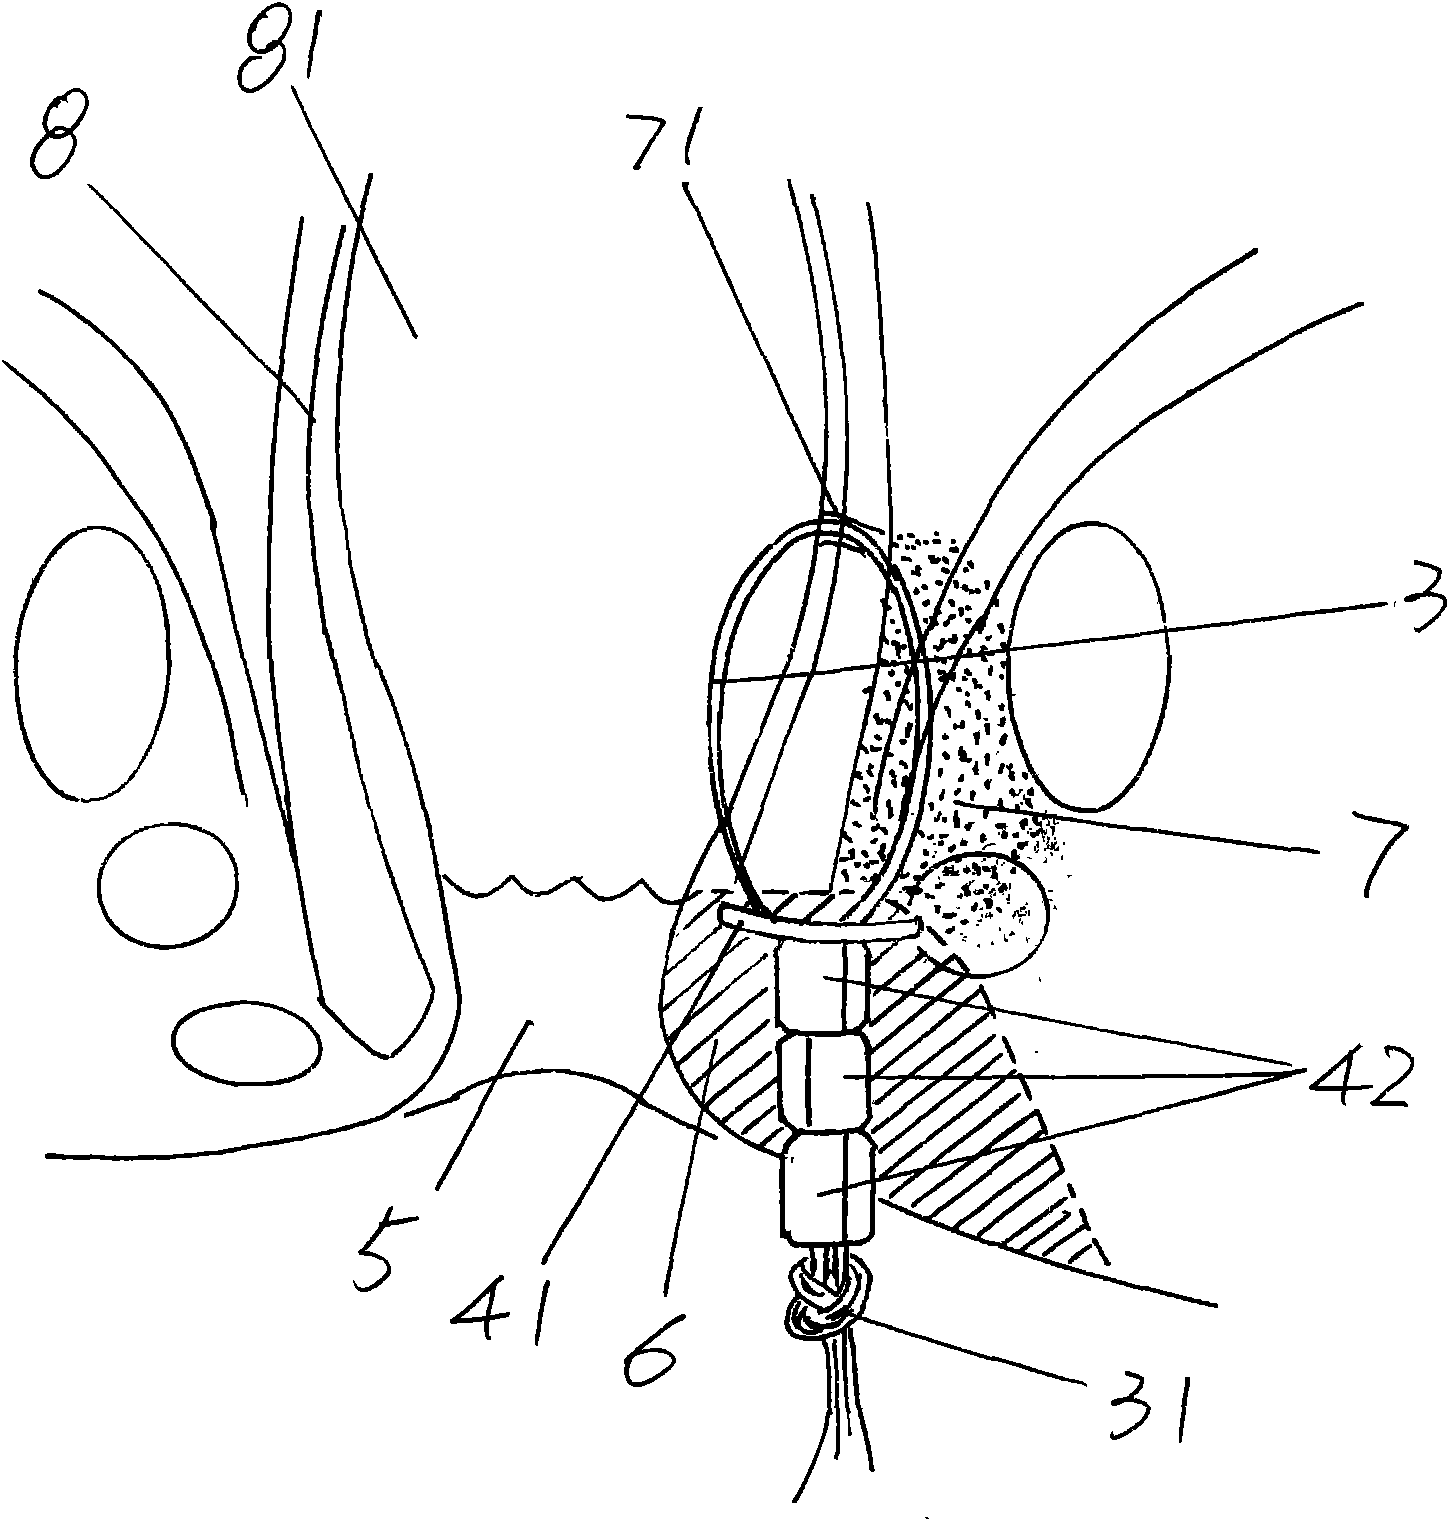 Anal fistula seton device